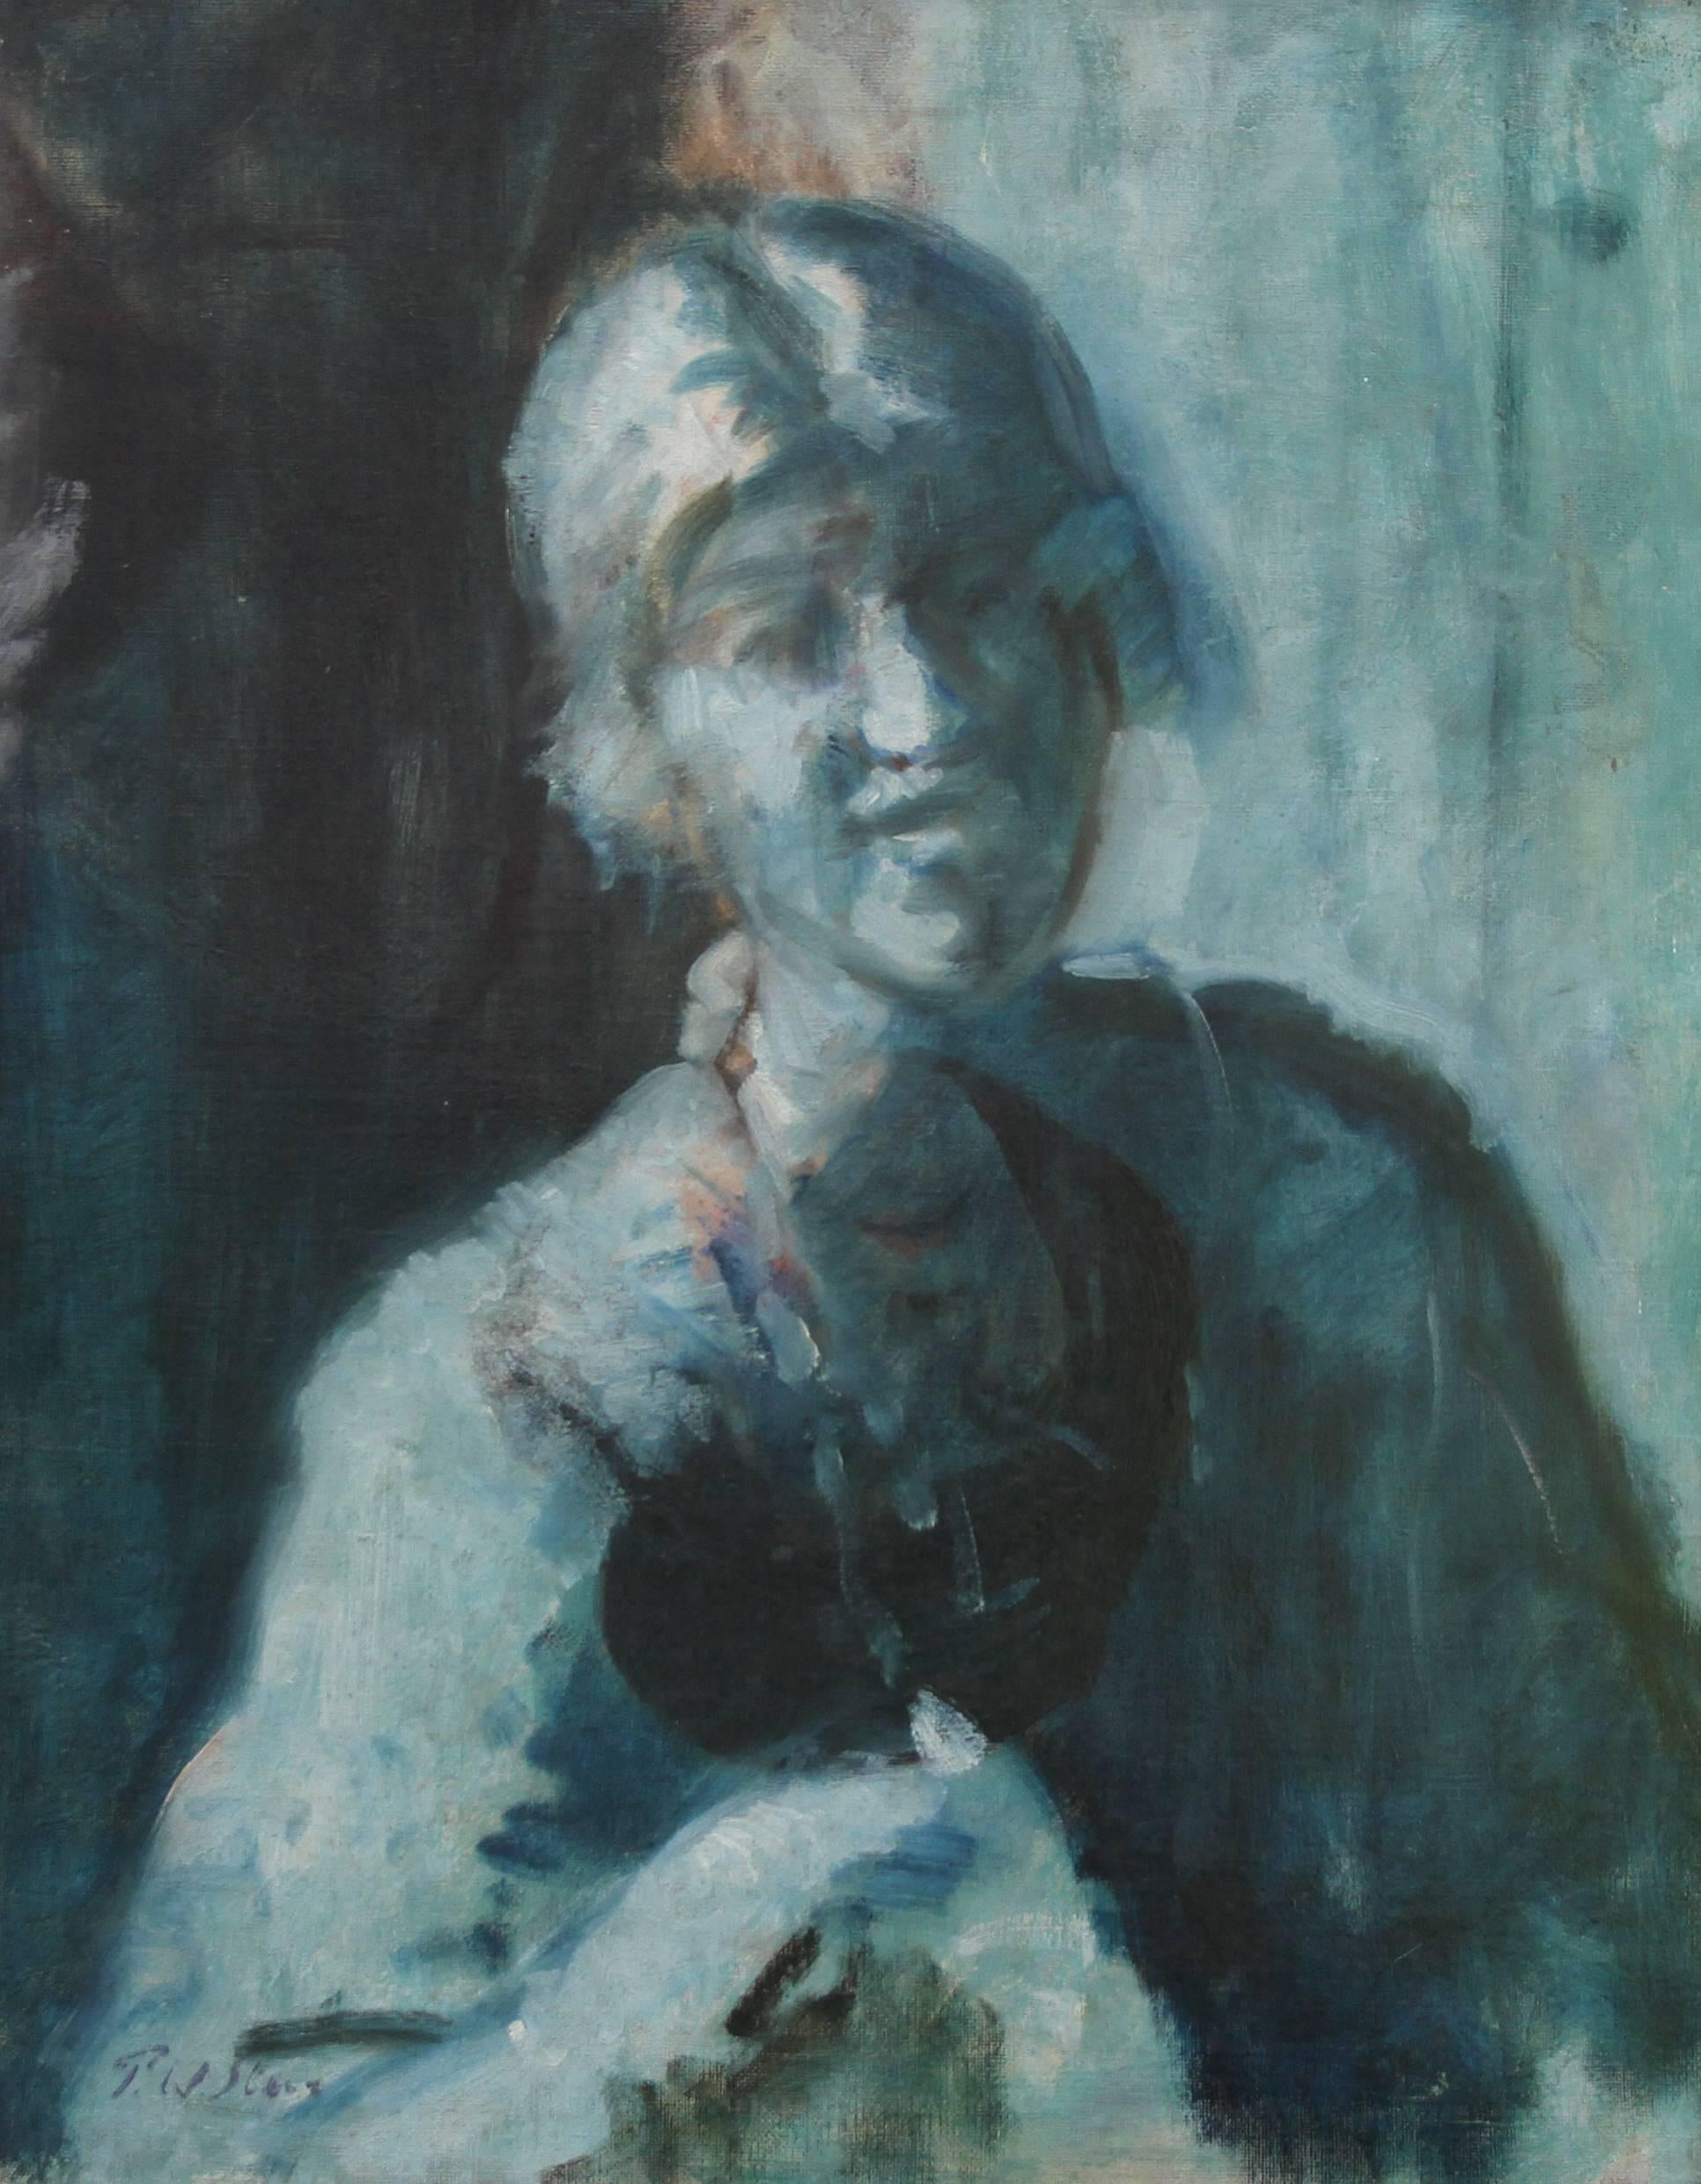 Porträt einer Frau - Blau - Britisches edwardianisches impressionistisches Ölgemälde  – Painting von Philip Wilson Steer